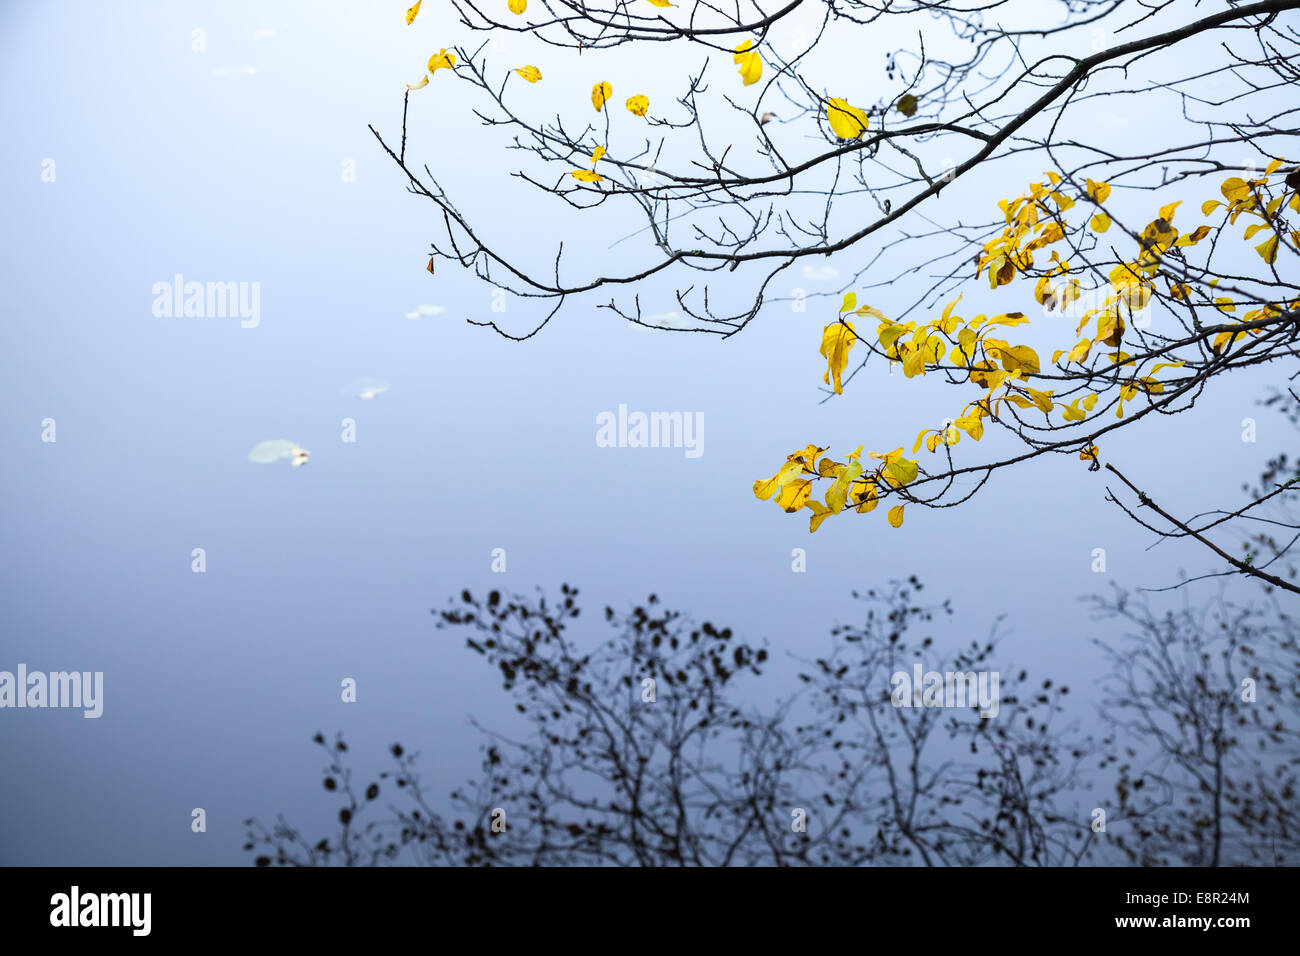 Les feuilles jaunes d'automne sur les branches d'arbre avec des reflets dans l'eau froide du lac encore bleu Banque D'Images